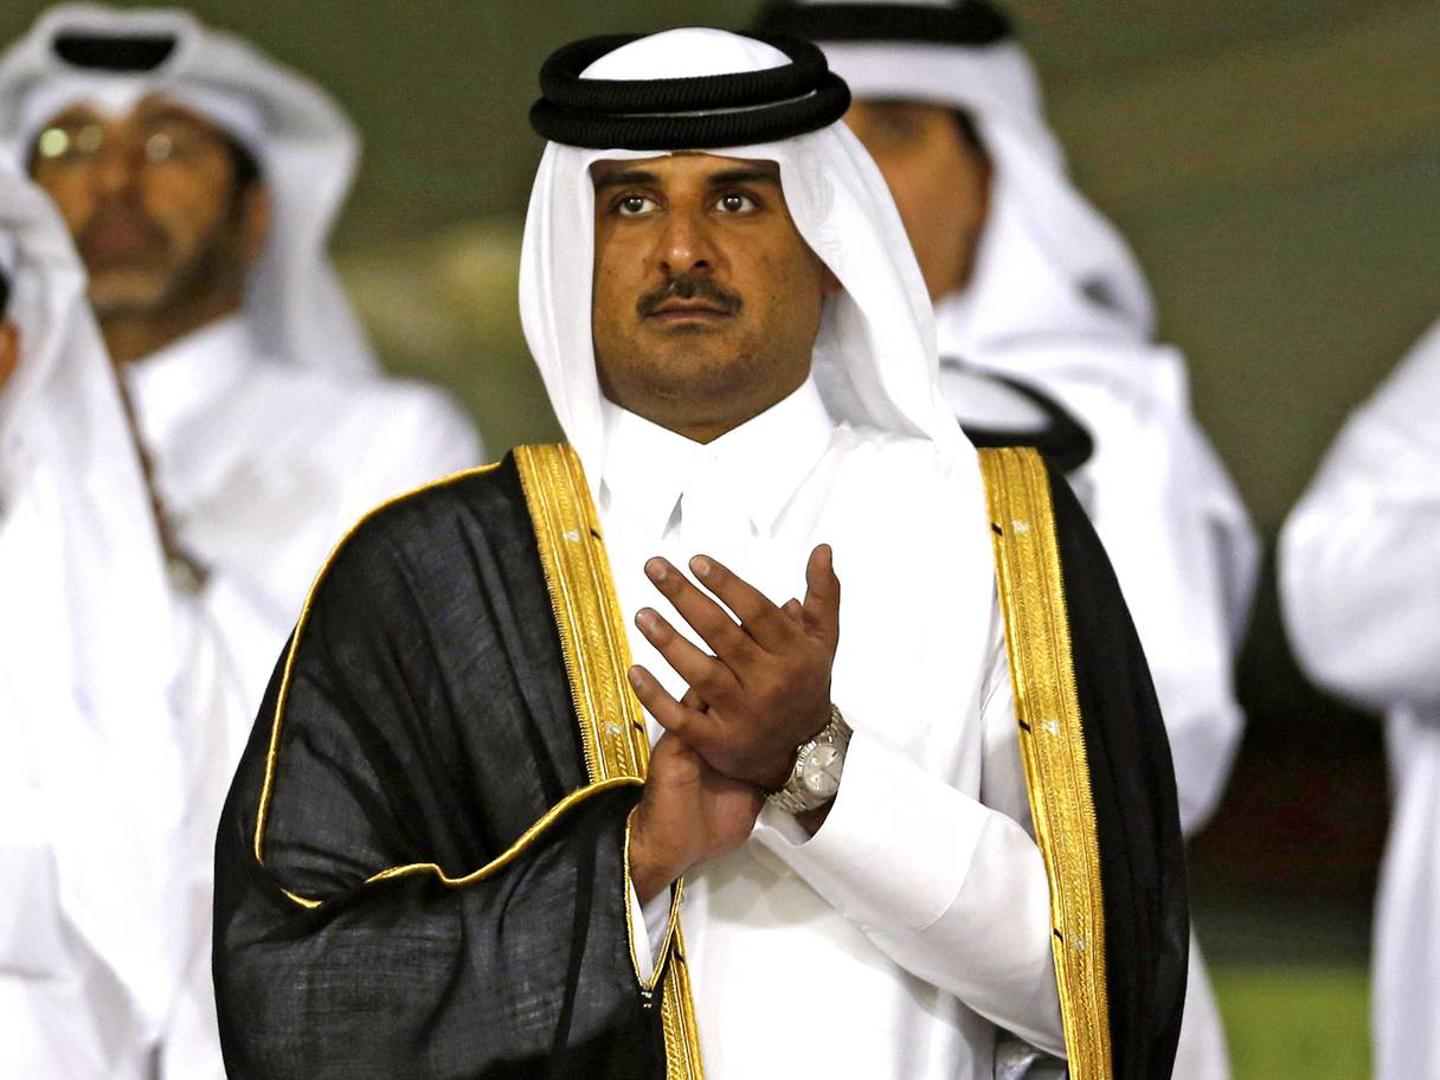 Hamad bin Khalifa Al Thani

Vođa Katara najmlađi je monarh u zemljama Bliskog istoka. Procjenjuje se da njegova osobna imovina ima neto vrijednost od oko 2,5 milijardi dolara